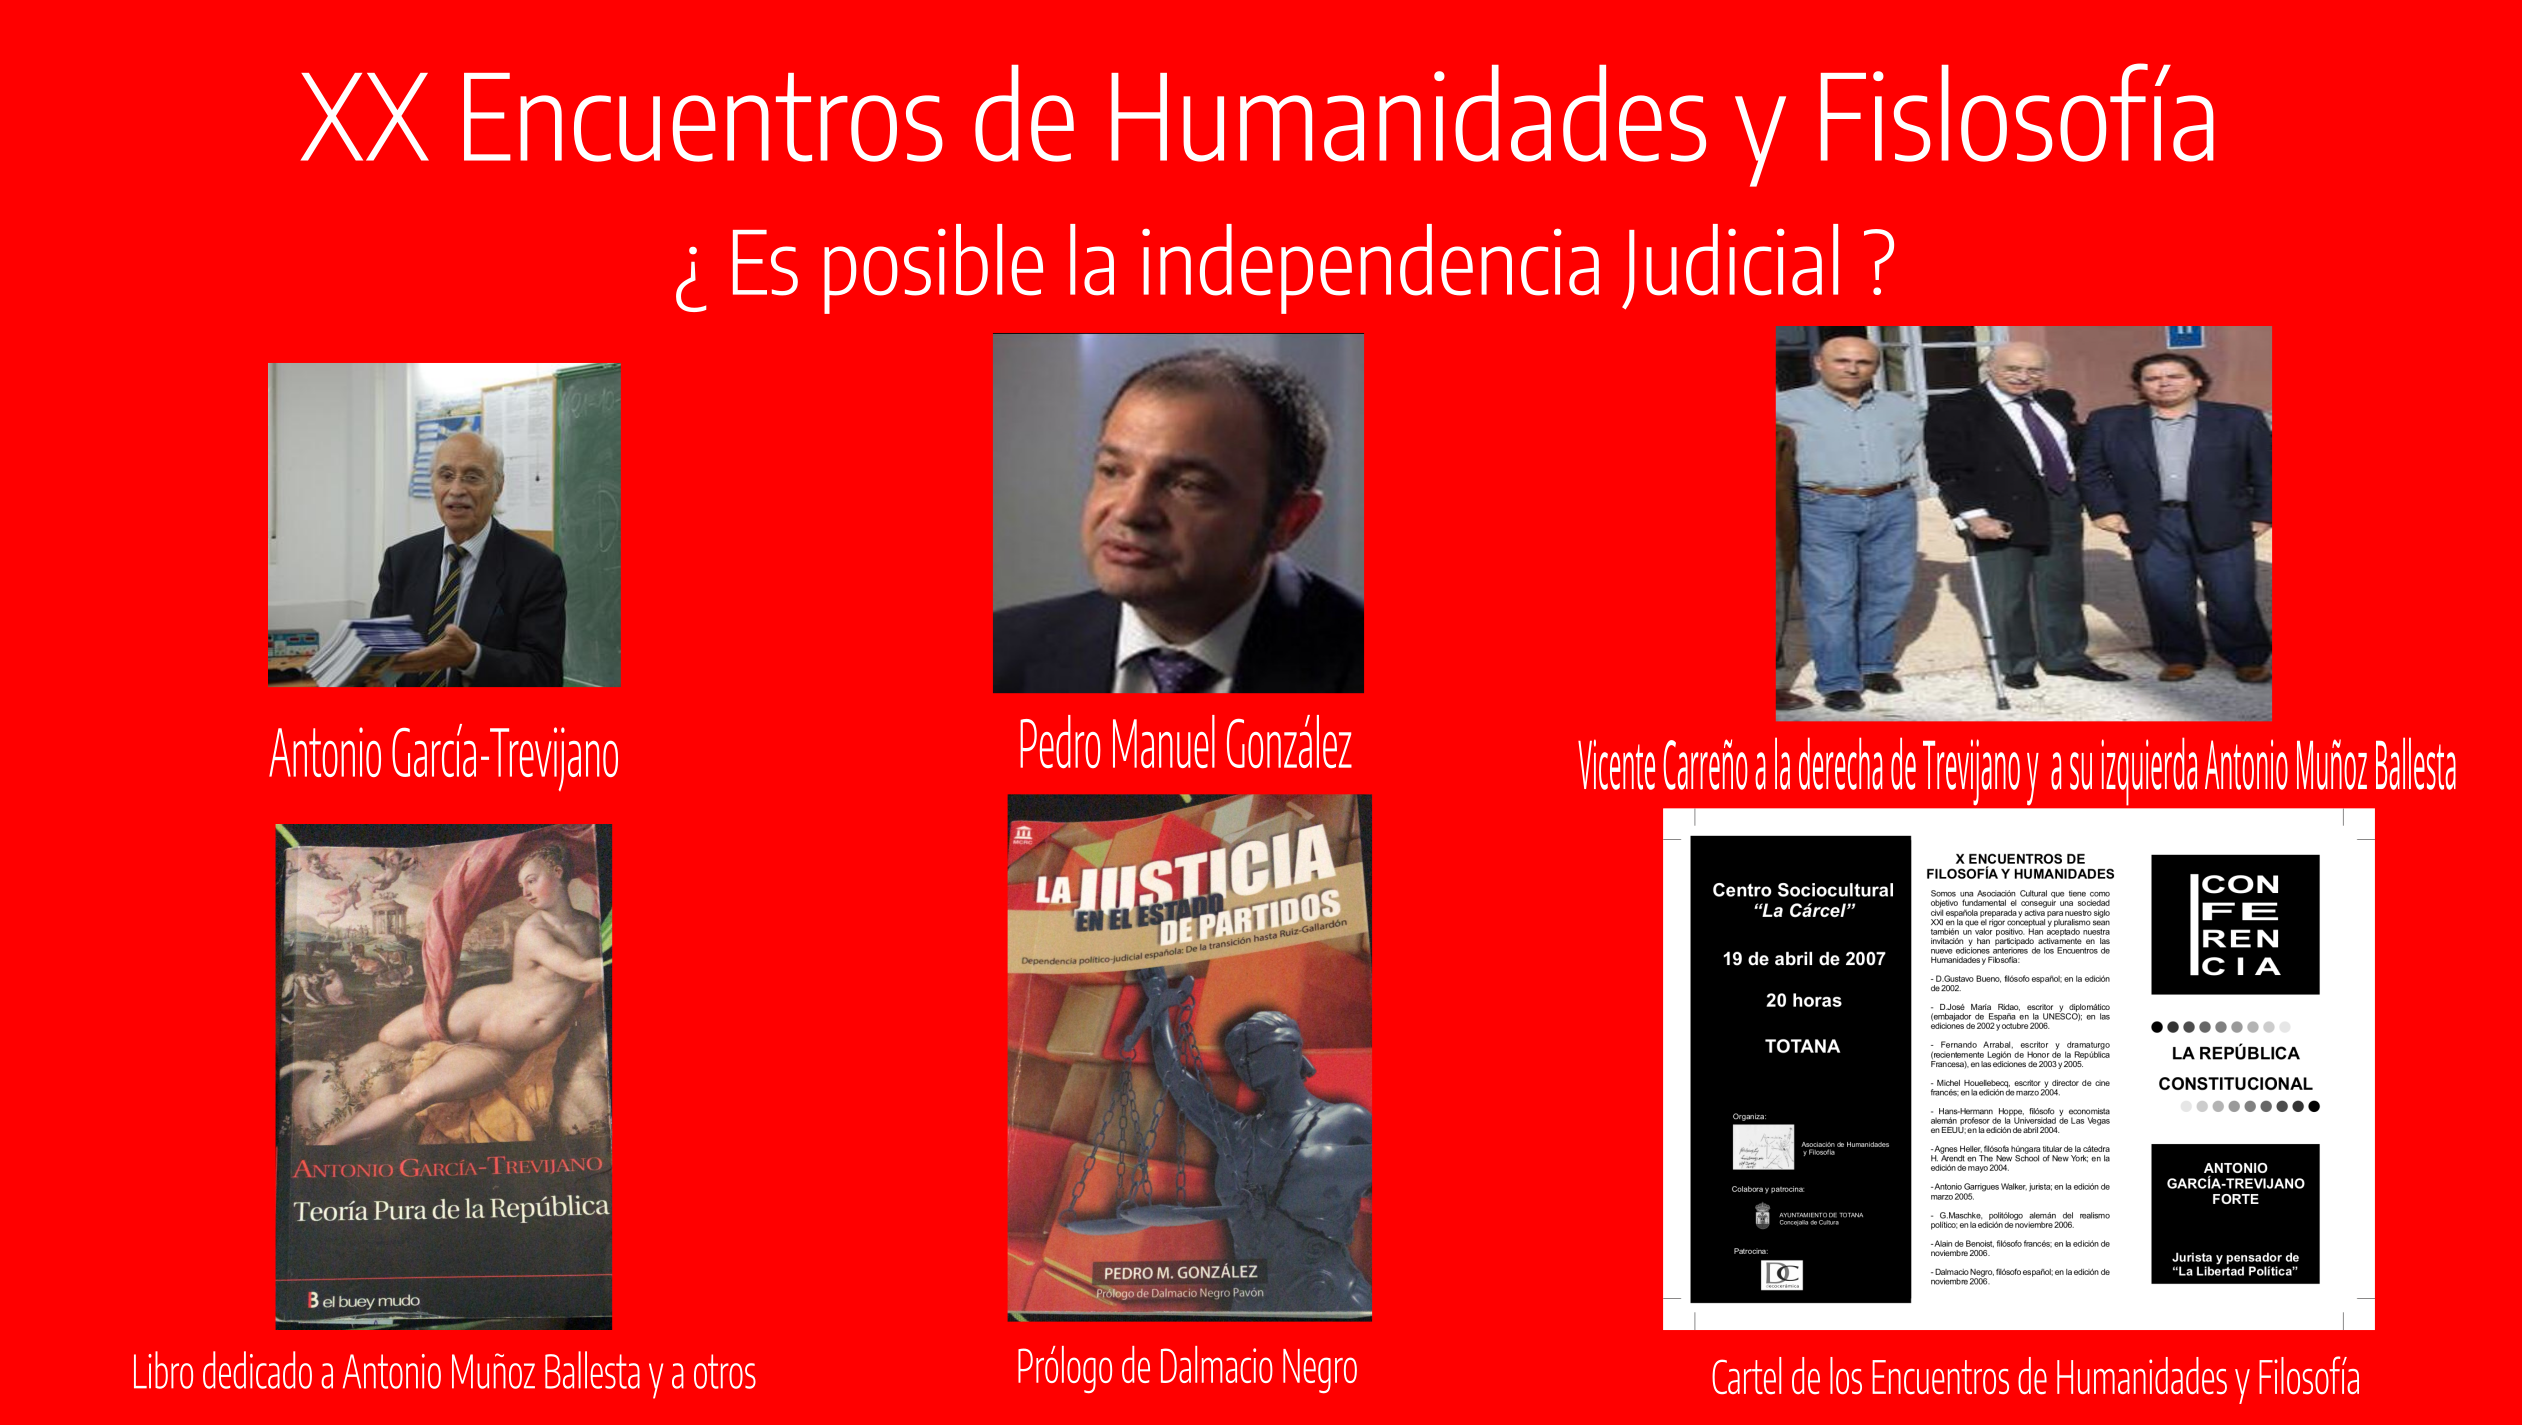 XX Encuentros de Humanidades y Filosfofía, Pedro Manuel Gonzalez, Vicente Carreño Carlos